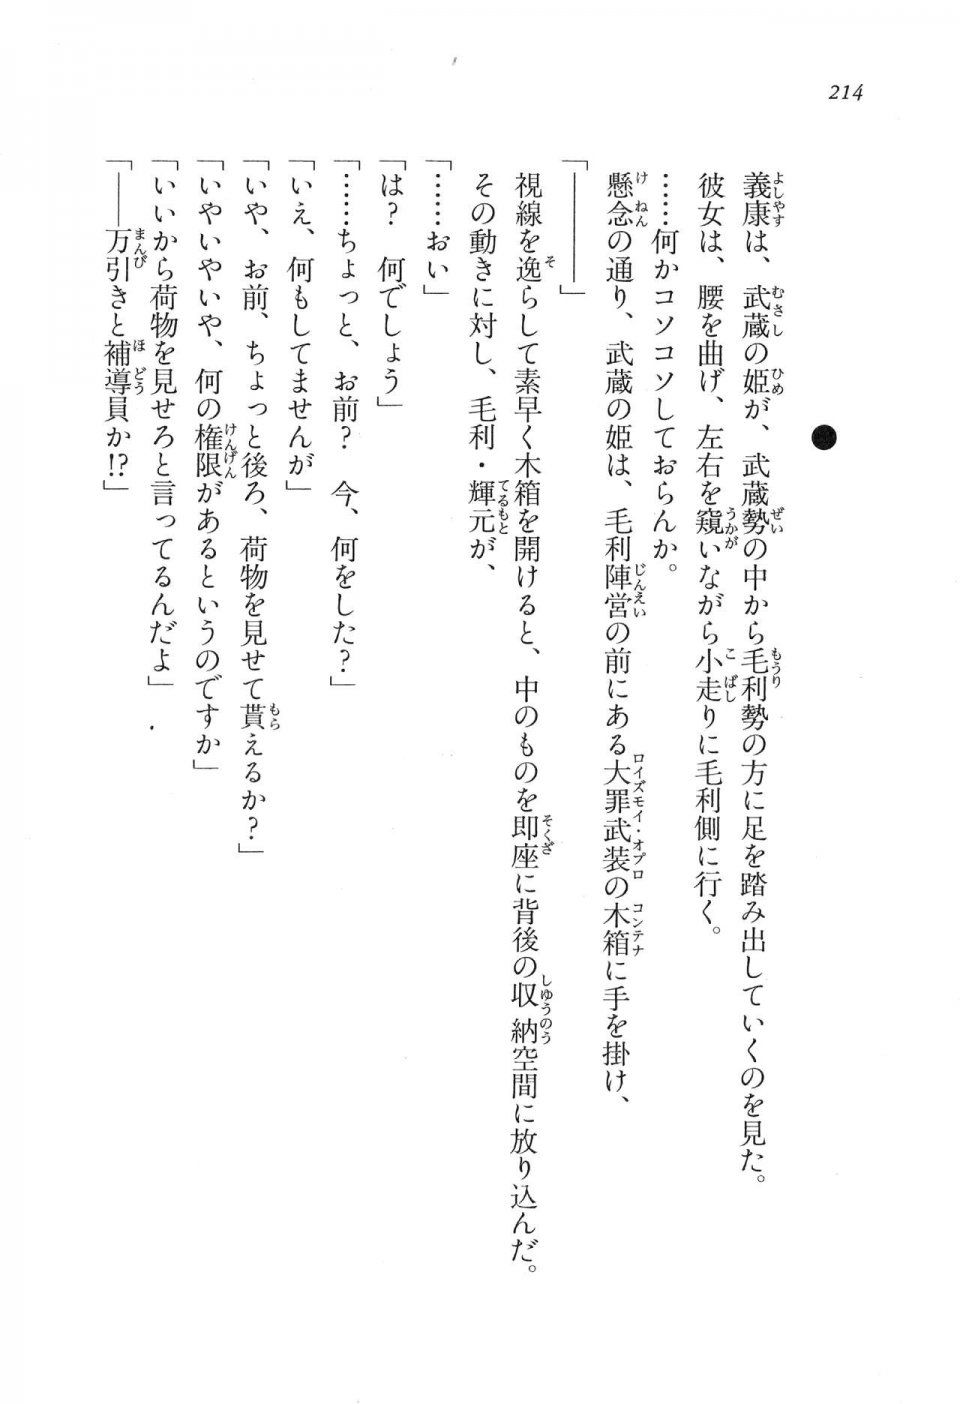 Kyoukai Senjou no Horizon LN Vol 16(7A) - Photo #214